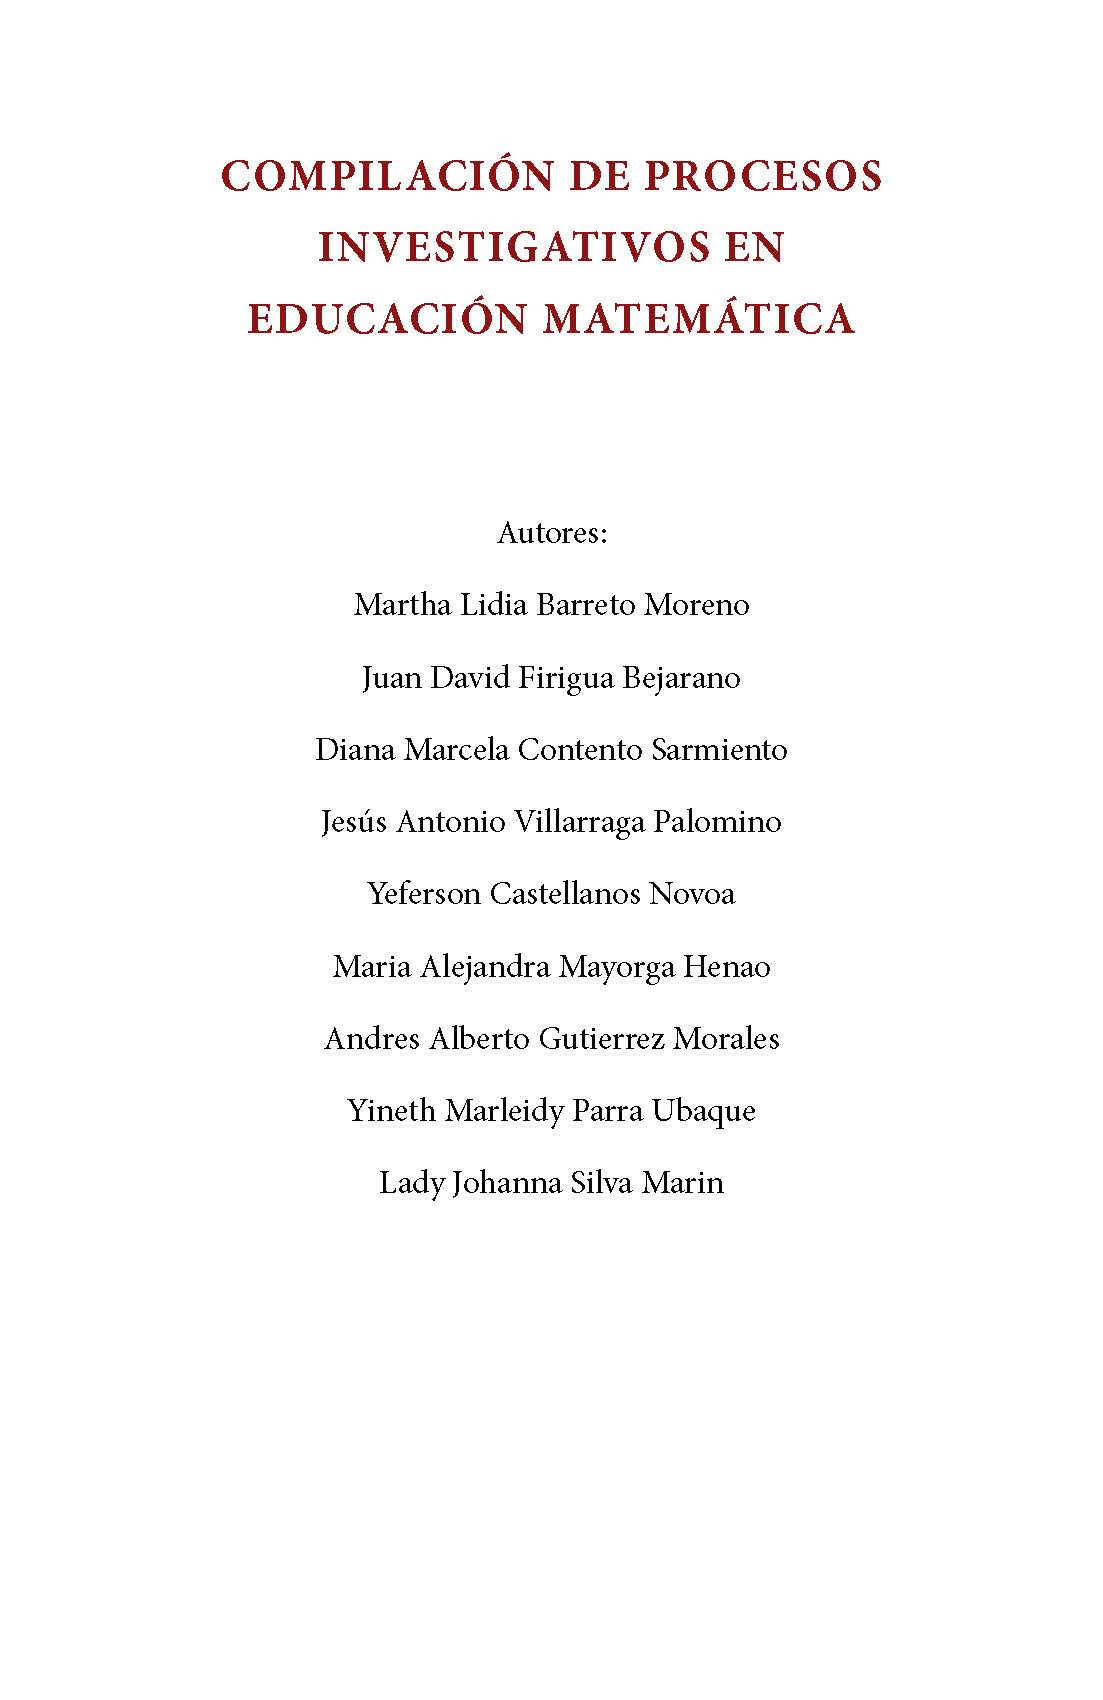 Compilación de procesos investigativos en educación matemática 